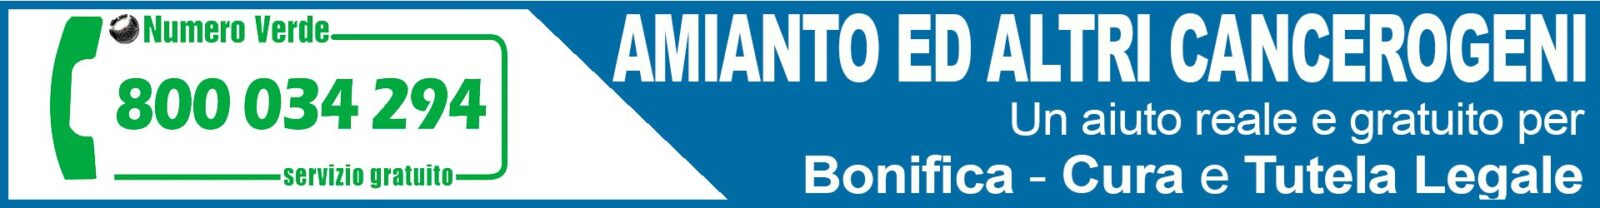 Osservatorio Nazionale Amianto Lombardia